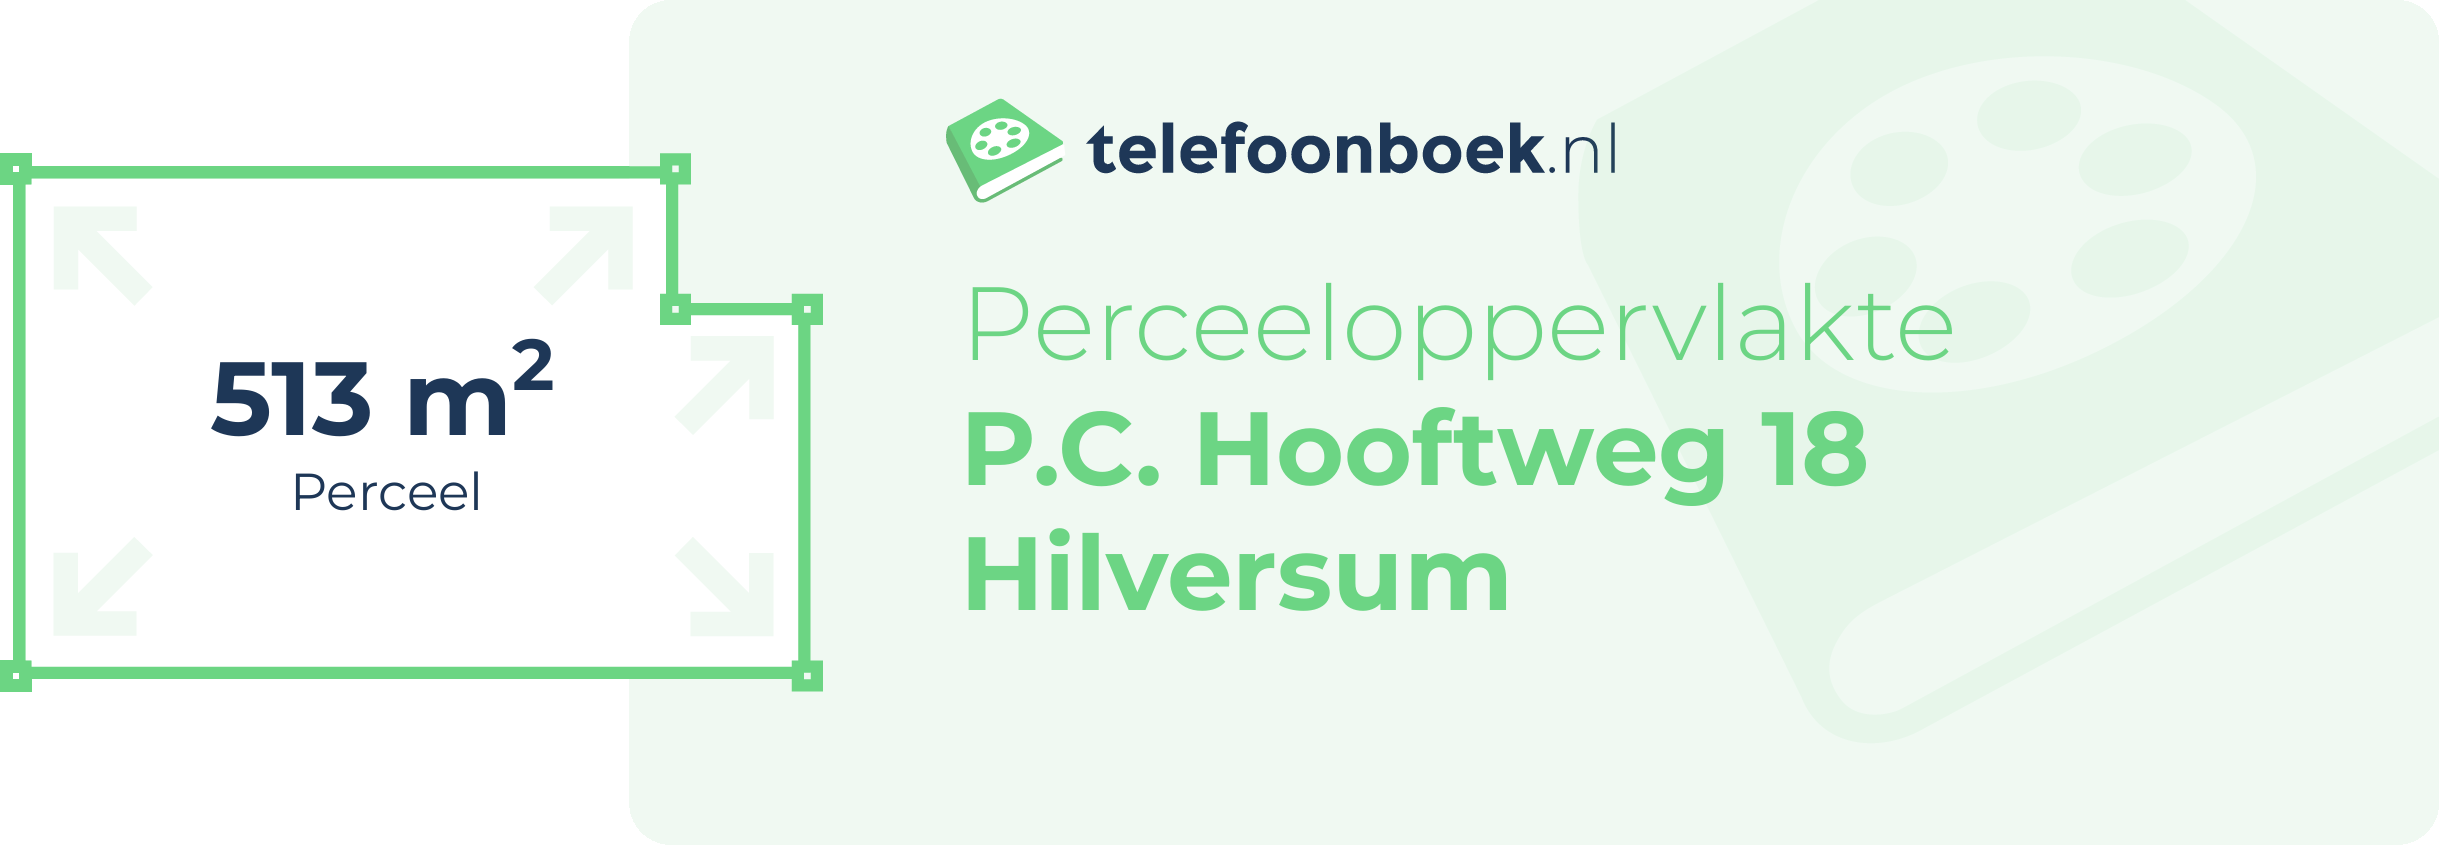 Perceeloppervlakte P.C. Hooftweg 18 Hilversum